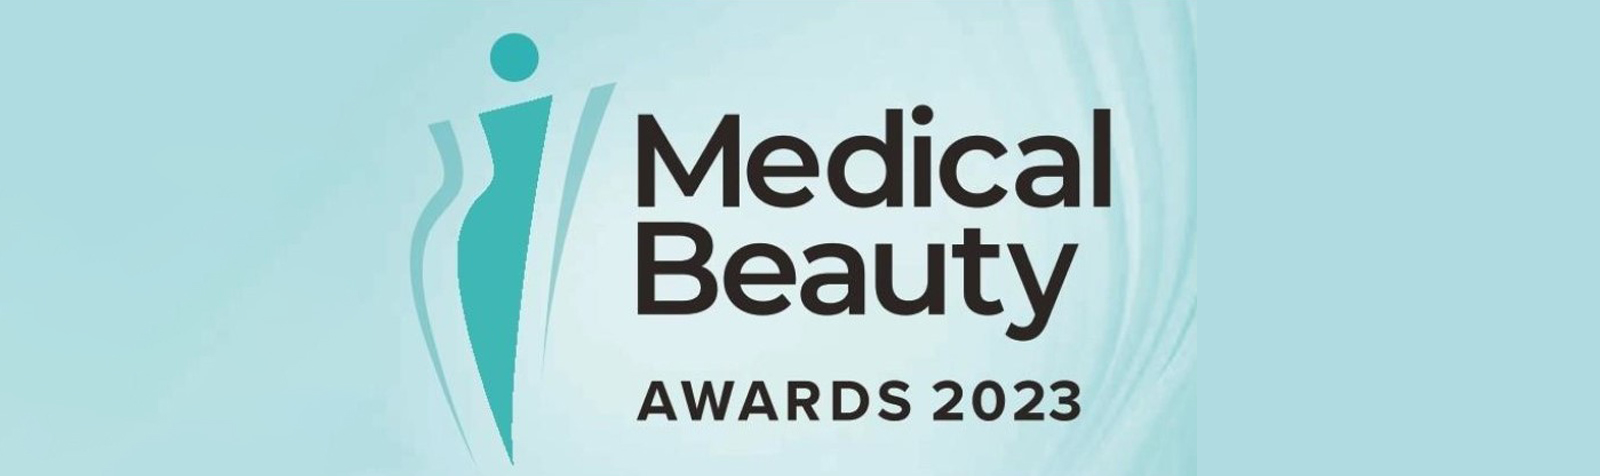 Medical Beauty Awards 2023